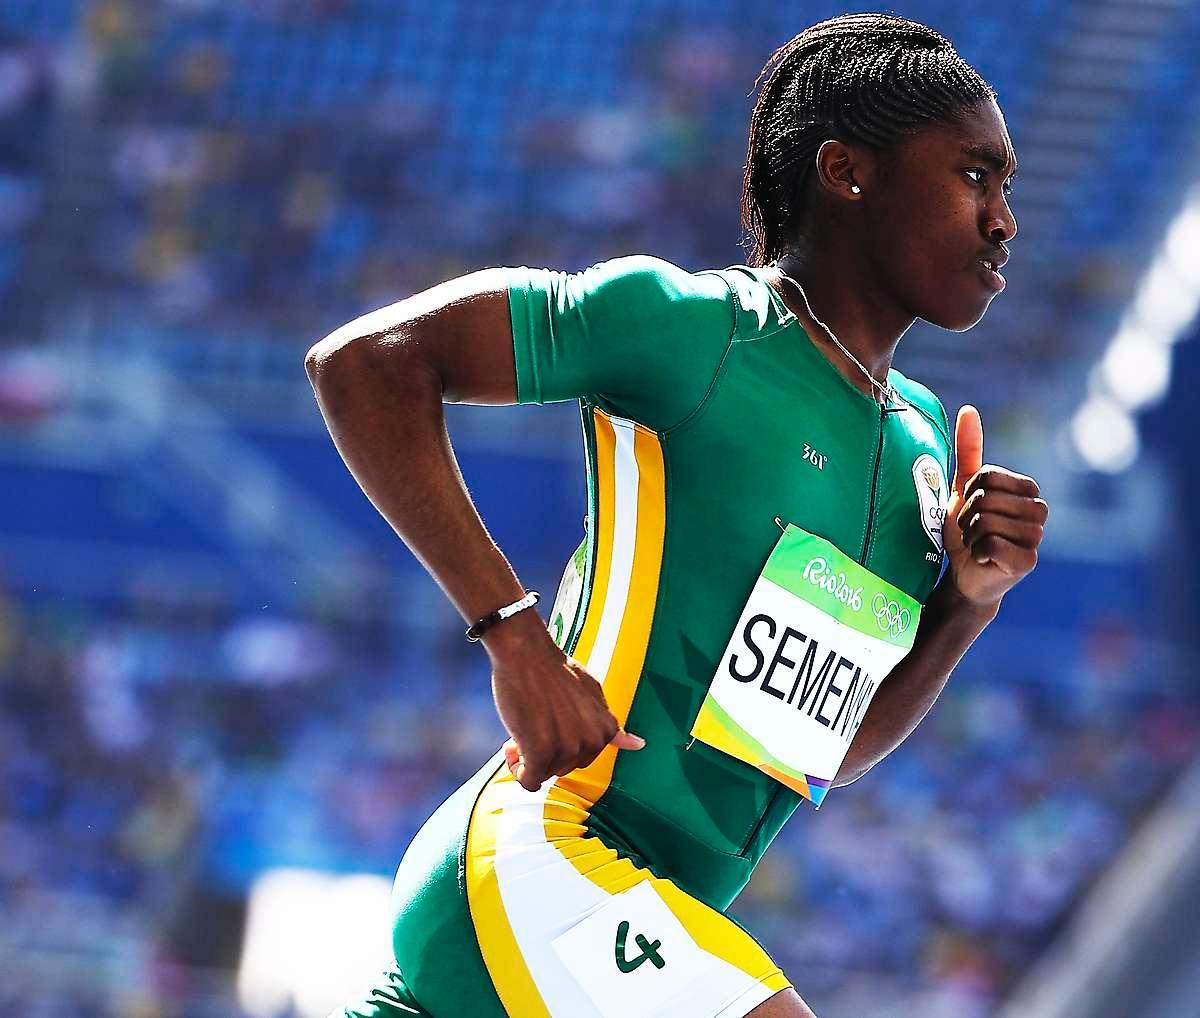 rekordform Caster Semenya är en av OS-friidrottens stora favoriter. Sydafrikanskan har inte förlorat ett lopp på 800 meter i år. Men något världsrekord vill hon inte prata om.